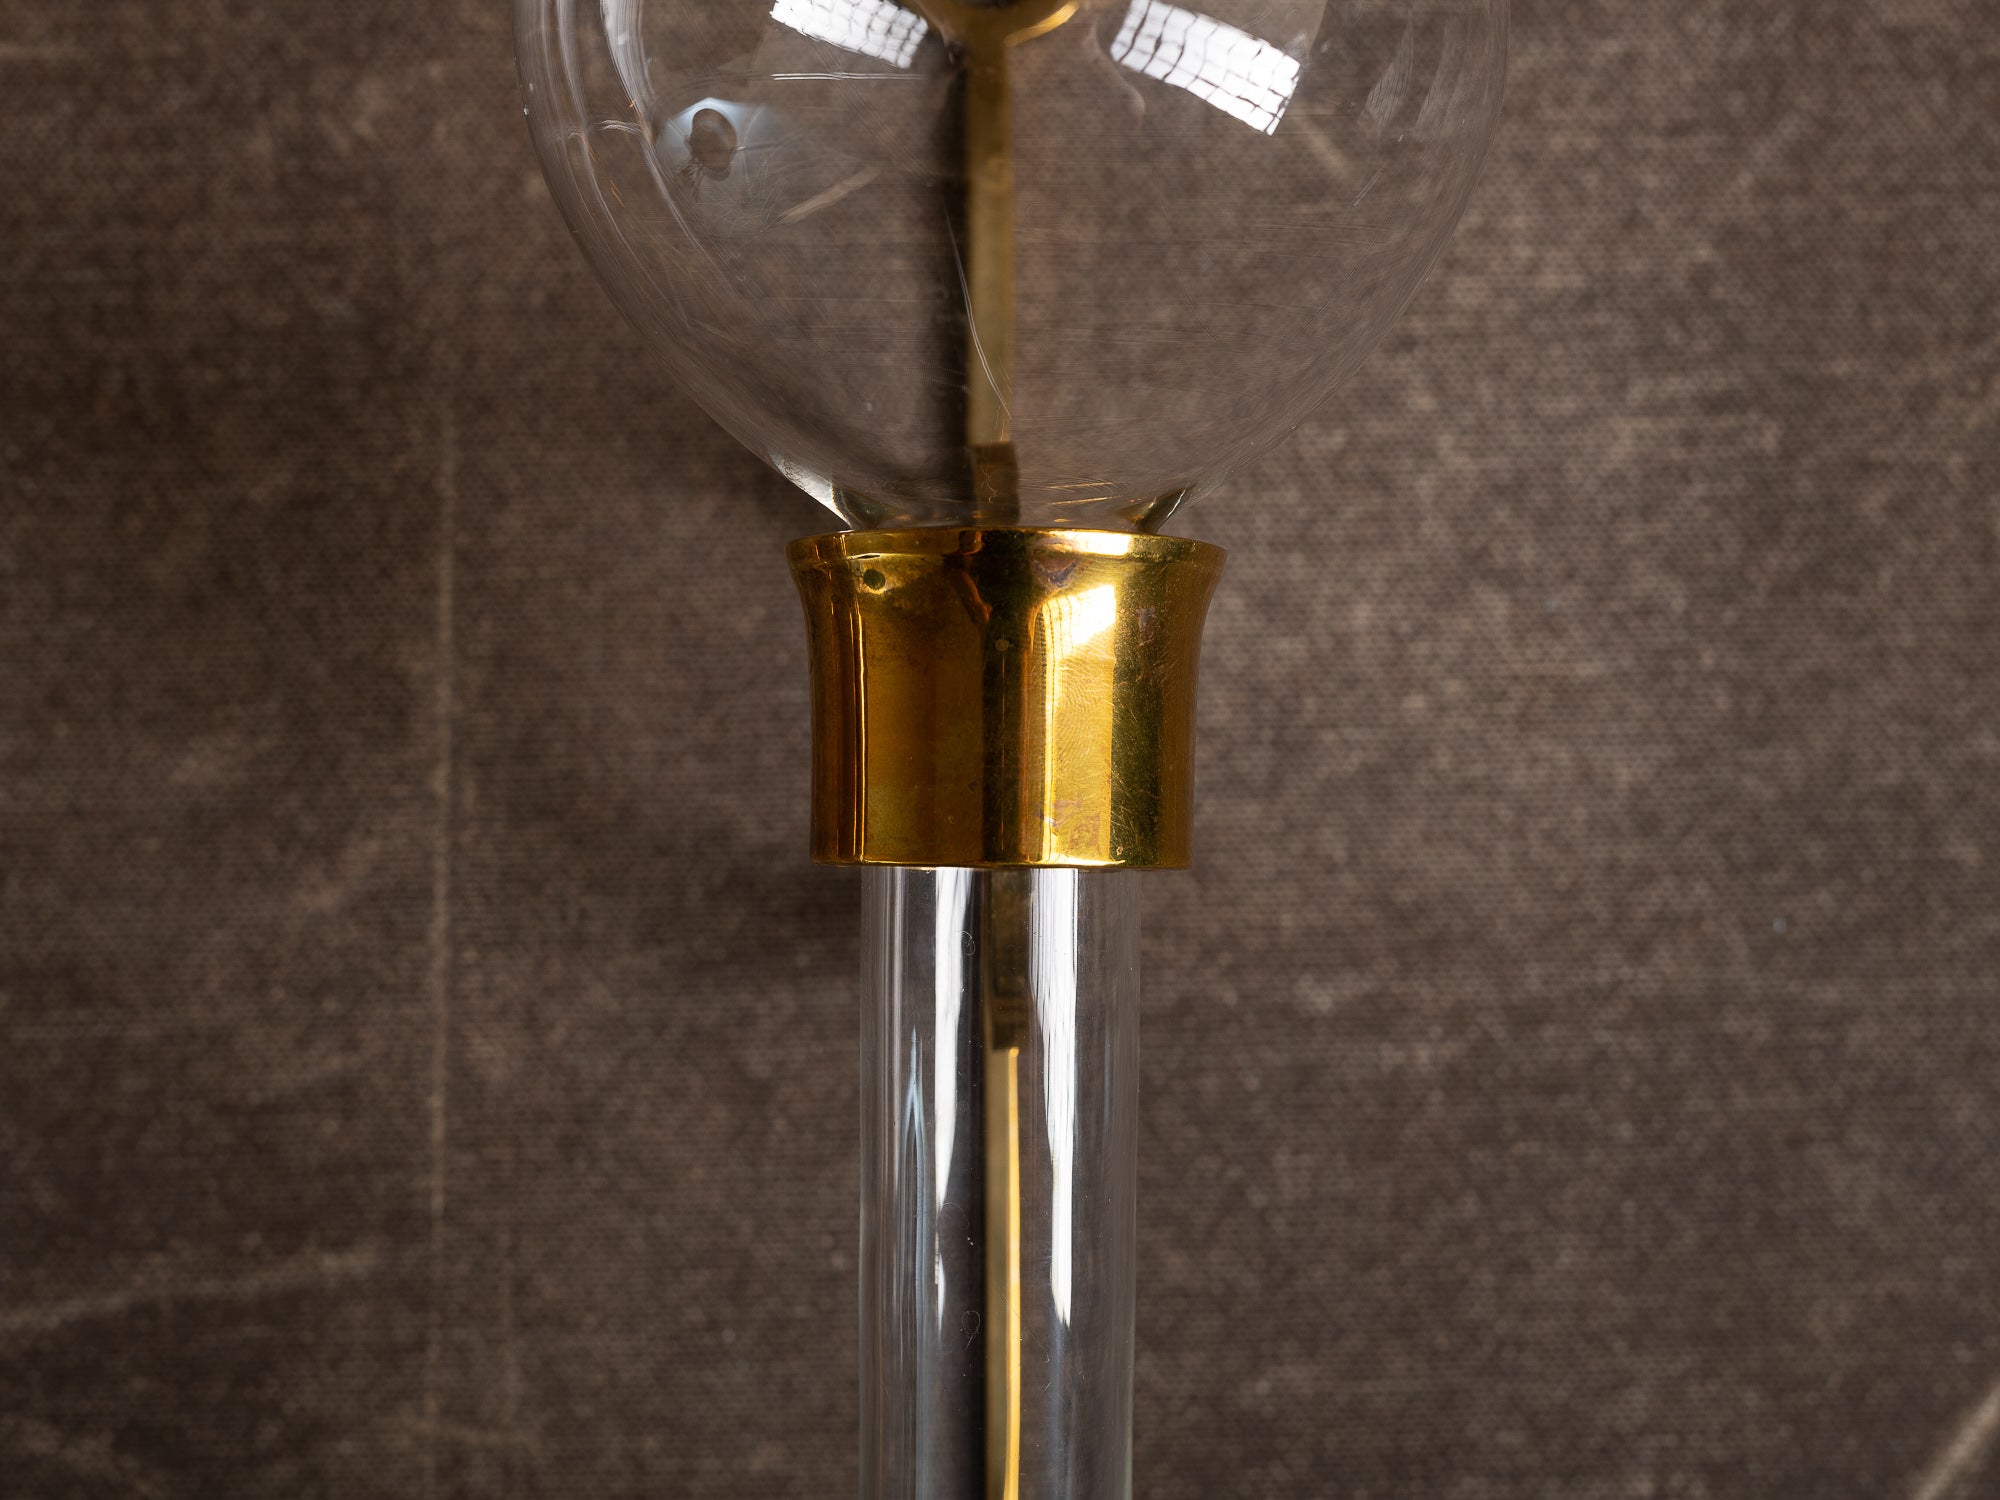 Paire de candélabres / vases muraux en verre et laiton d'inspiration néo-classiques, Suède (vers 1965-70)..Set of 2 neo classical brass & glass wall hanging vases / candle holders, Sweden (ca. 1965-70)